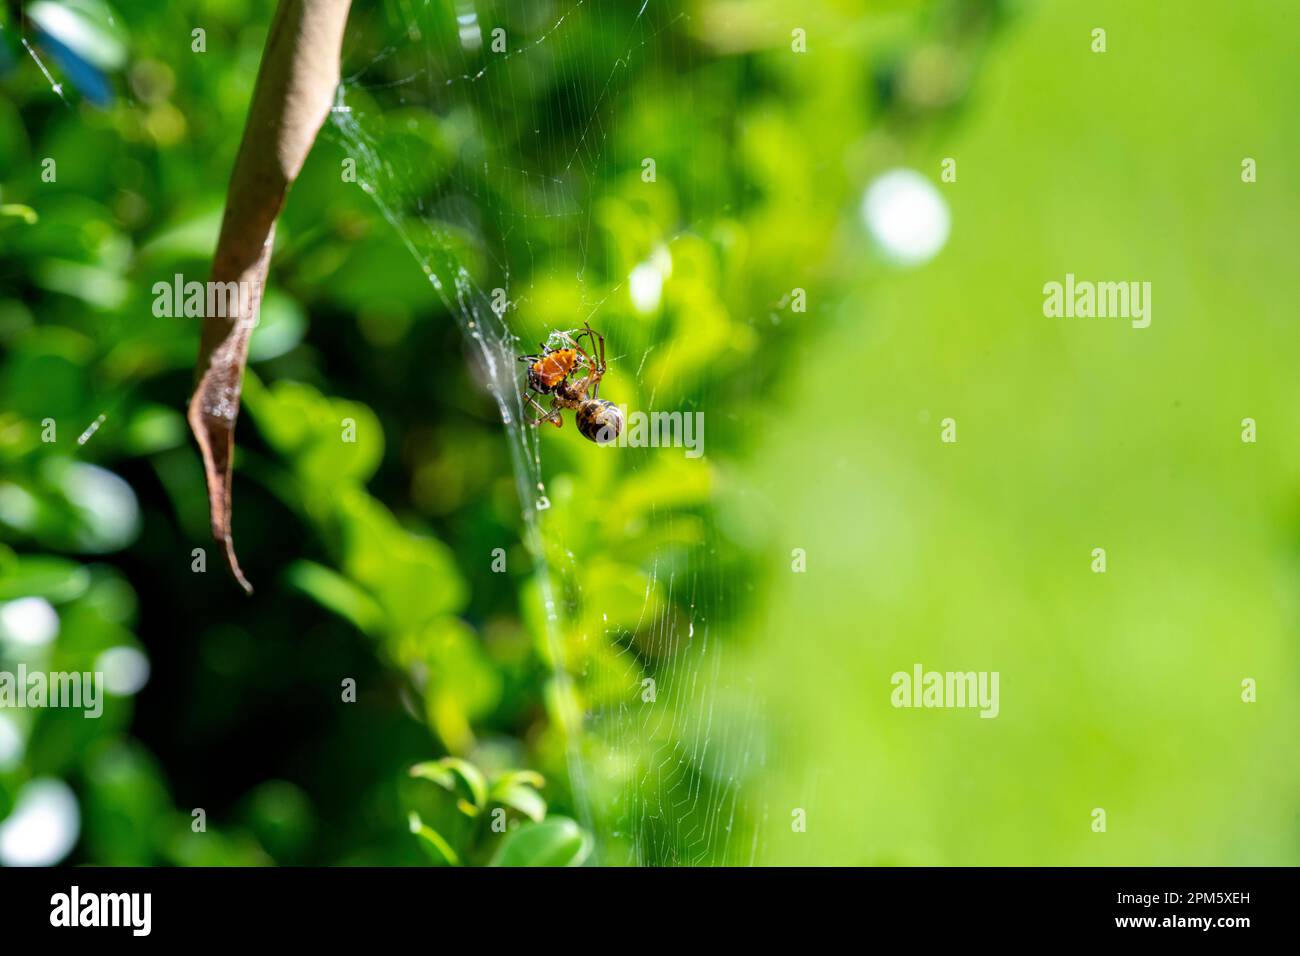 Die Leaf-Curling Spider (Phonognatha graeffei) fängt Beute im Netz in Sydney, New South Wales, Australien. (Foto: Tara Chand Malhotra) Stockfoto